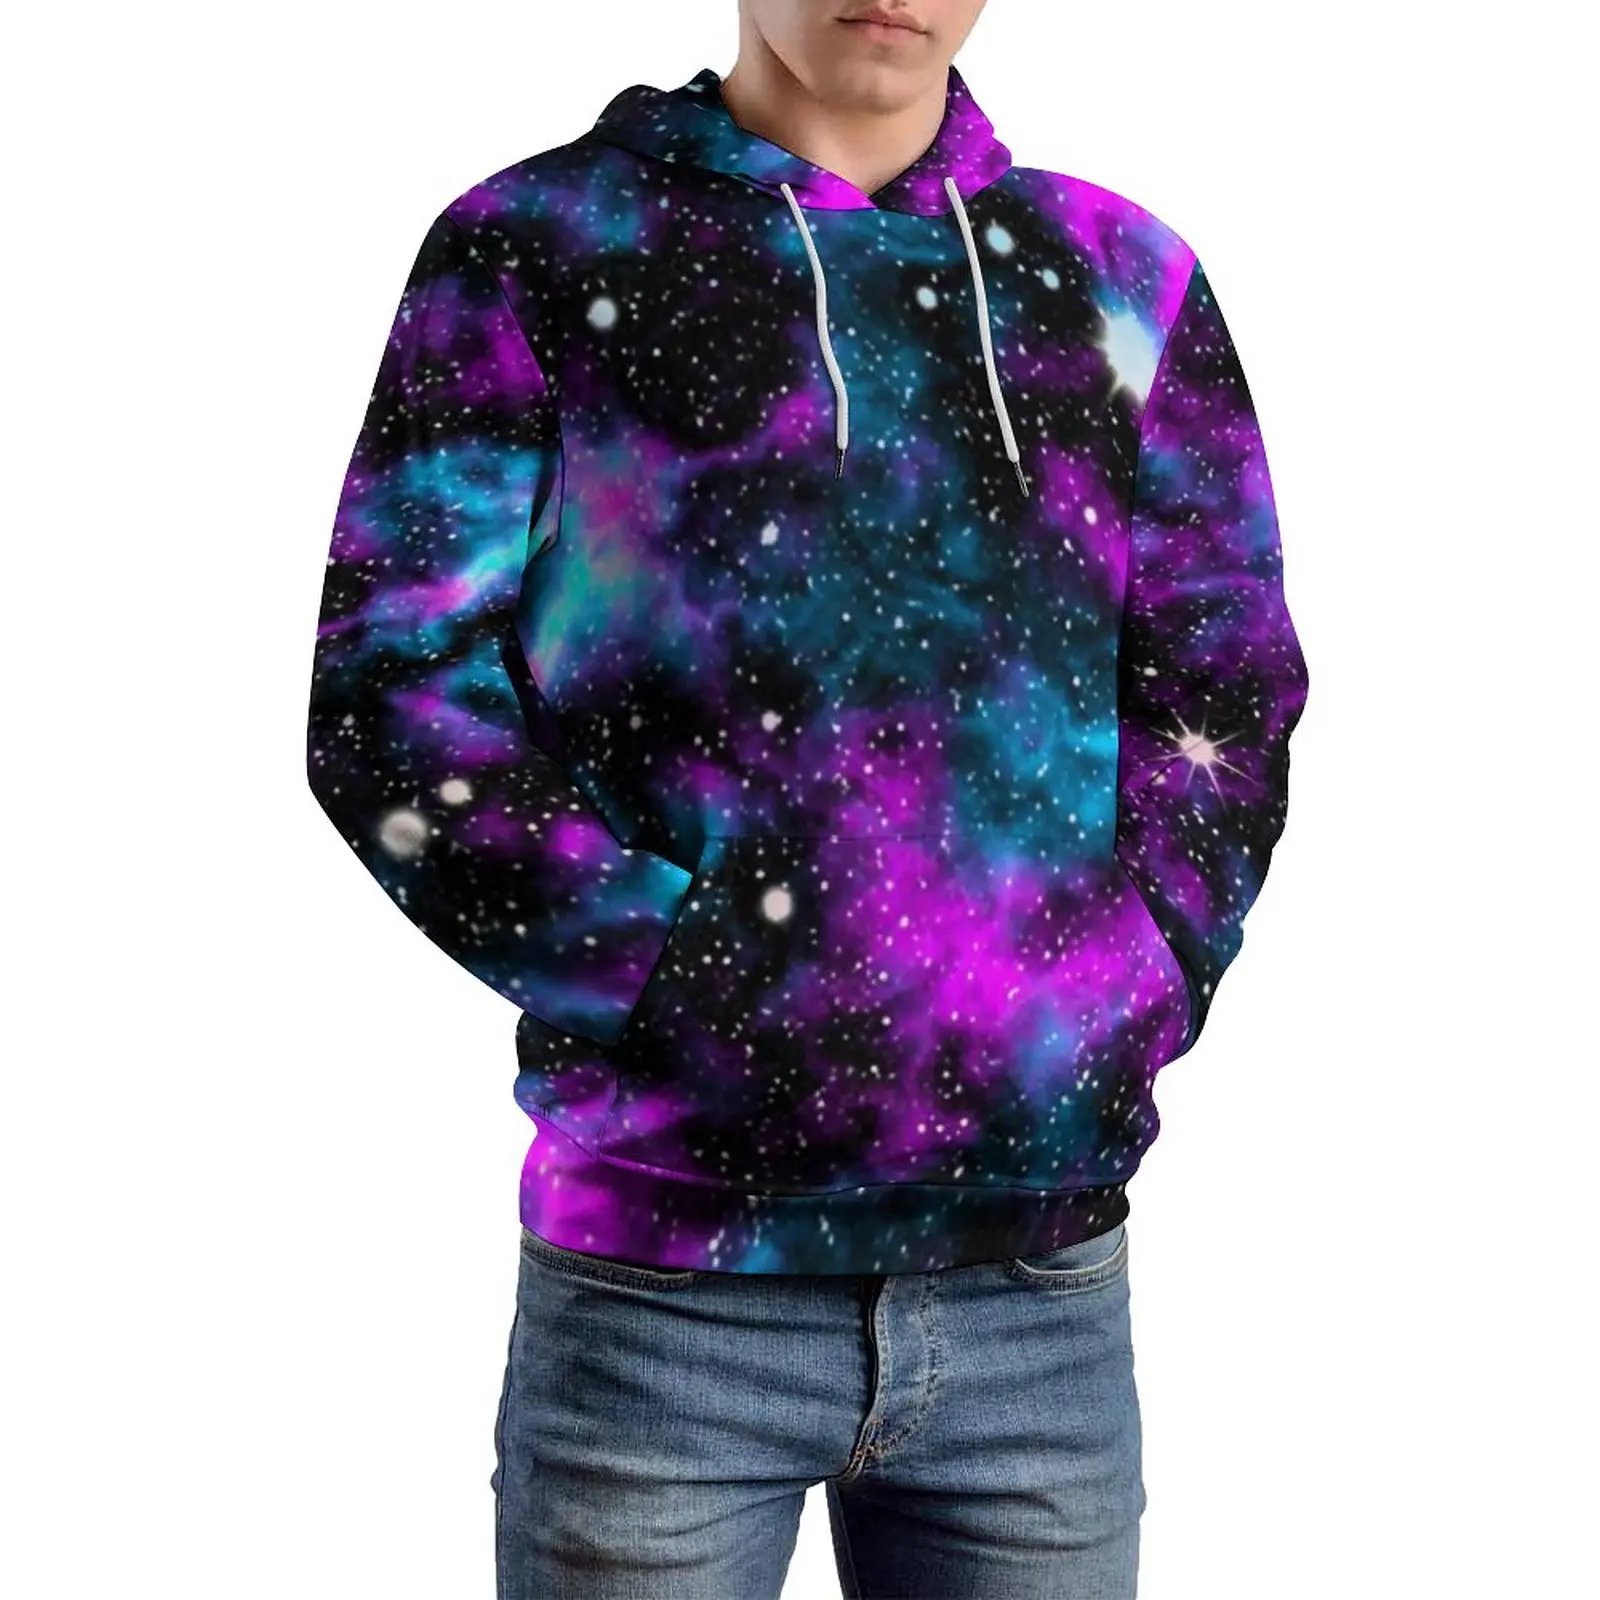 

Толстовка мужская оверсайз с длинным рукавом, свободная повседневная кофта с принтом космических неоновых цветов, синяя и фиолетовая галактика